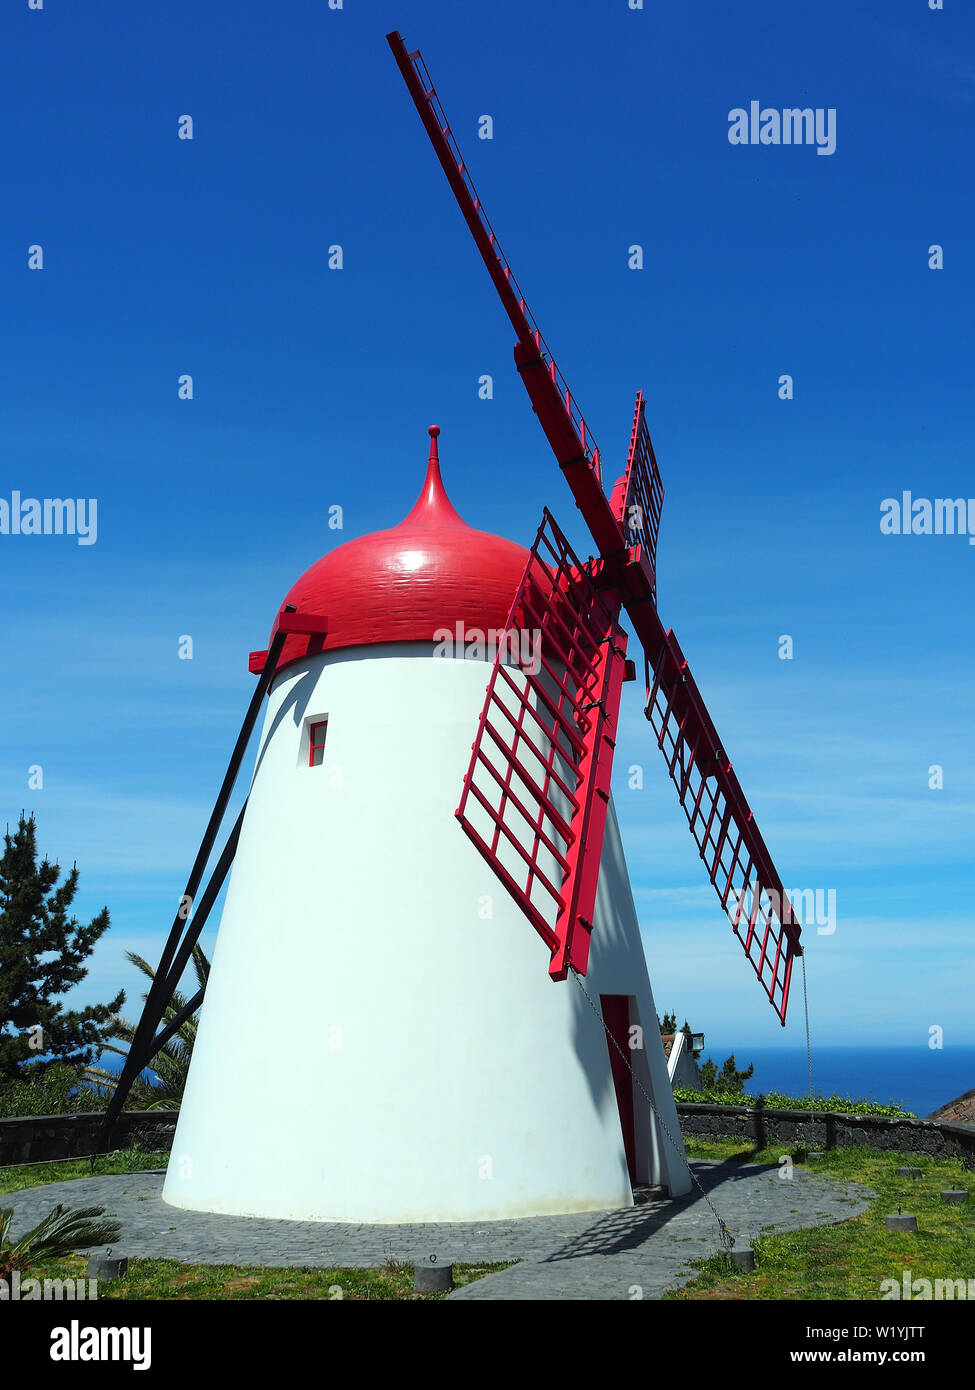 windmill, Bretanha, São Miguel Island, Azores, Açores, Portugal Stock Photo